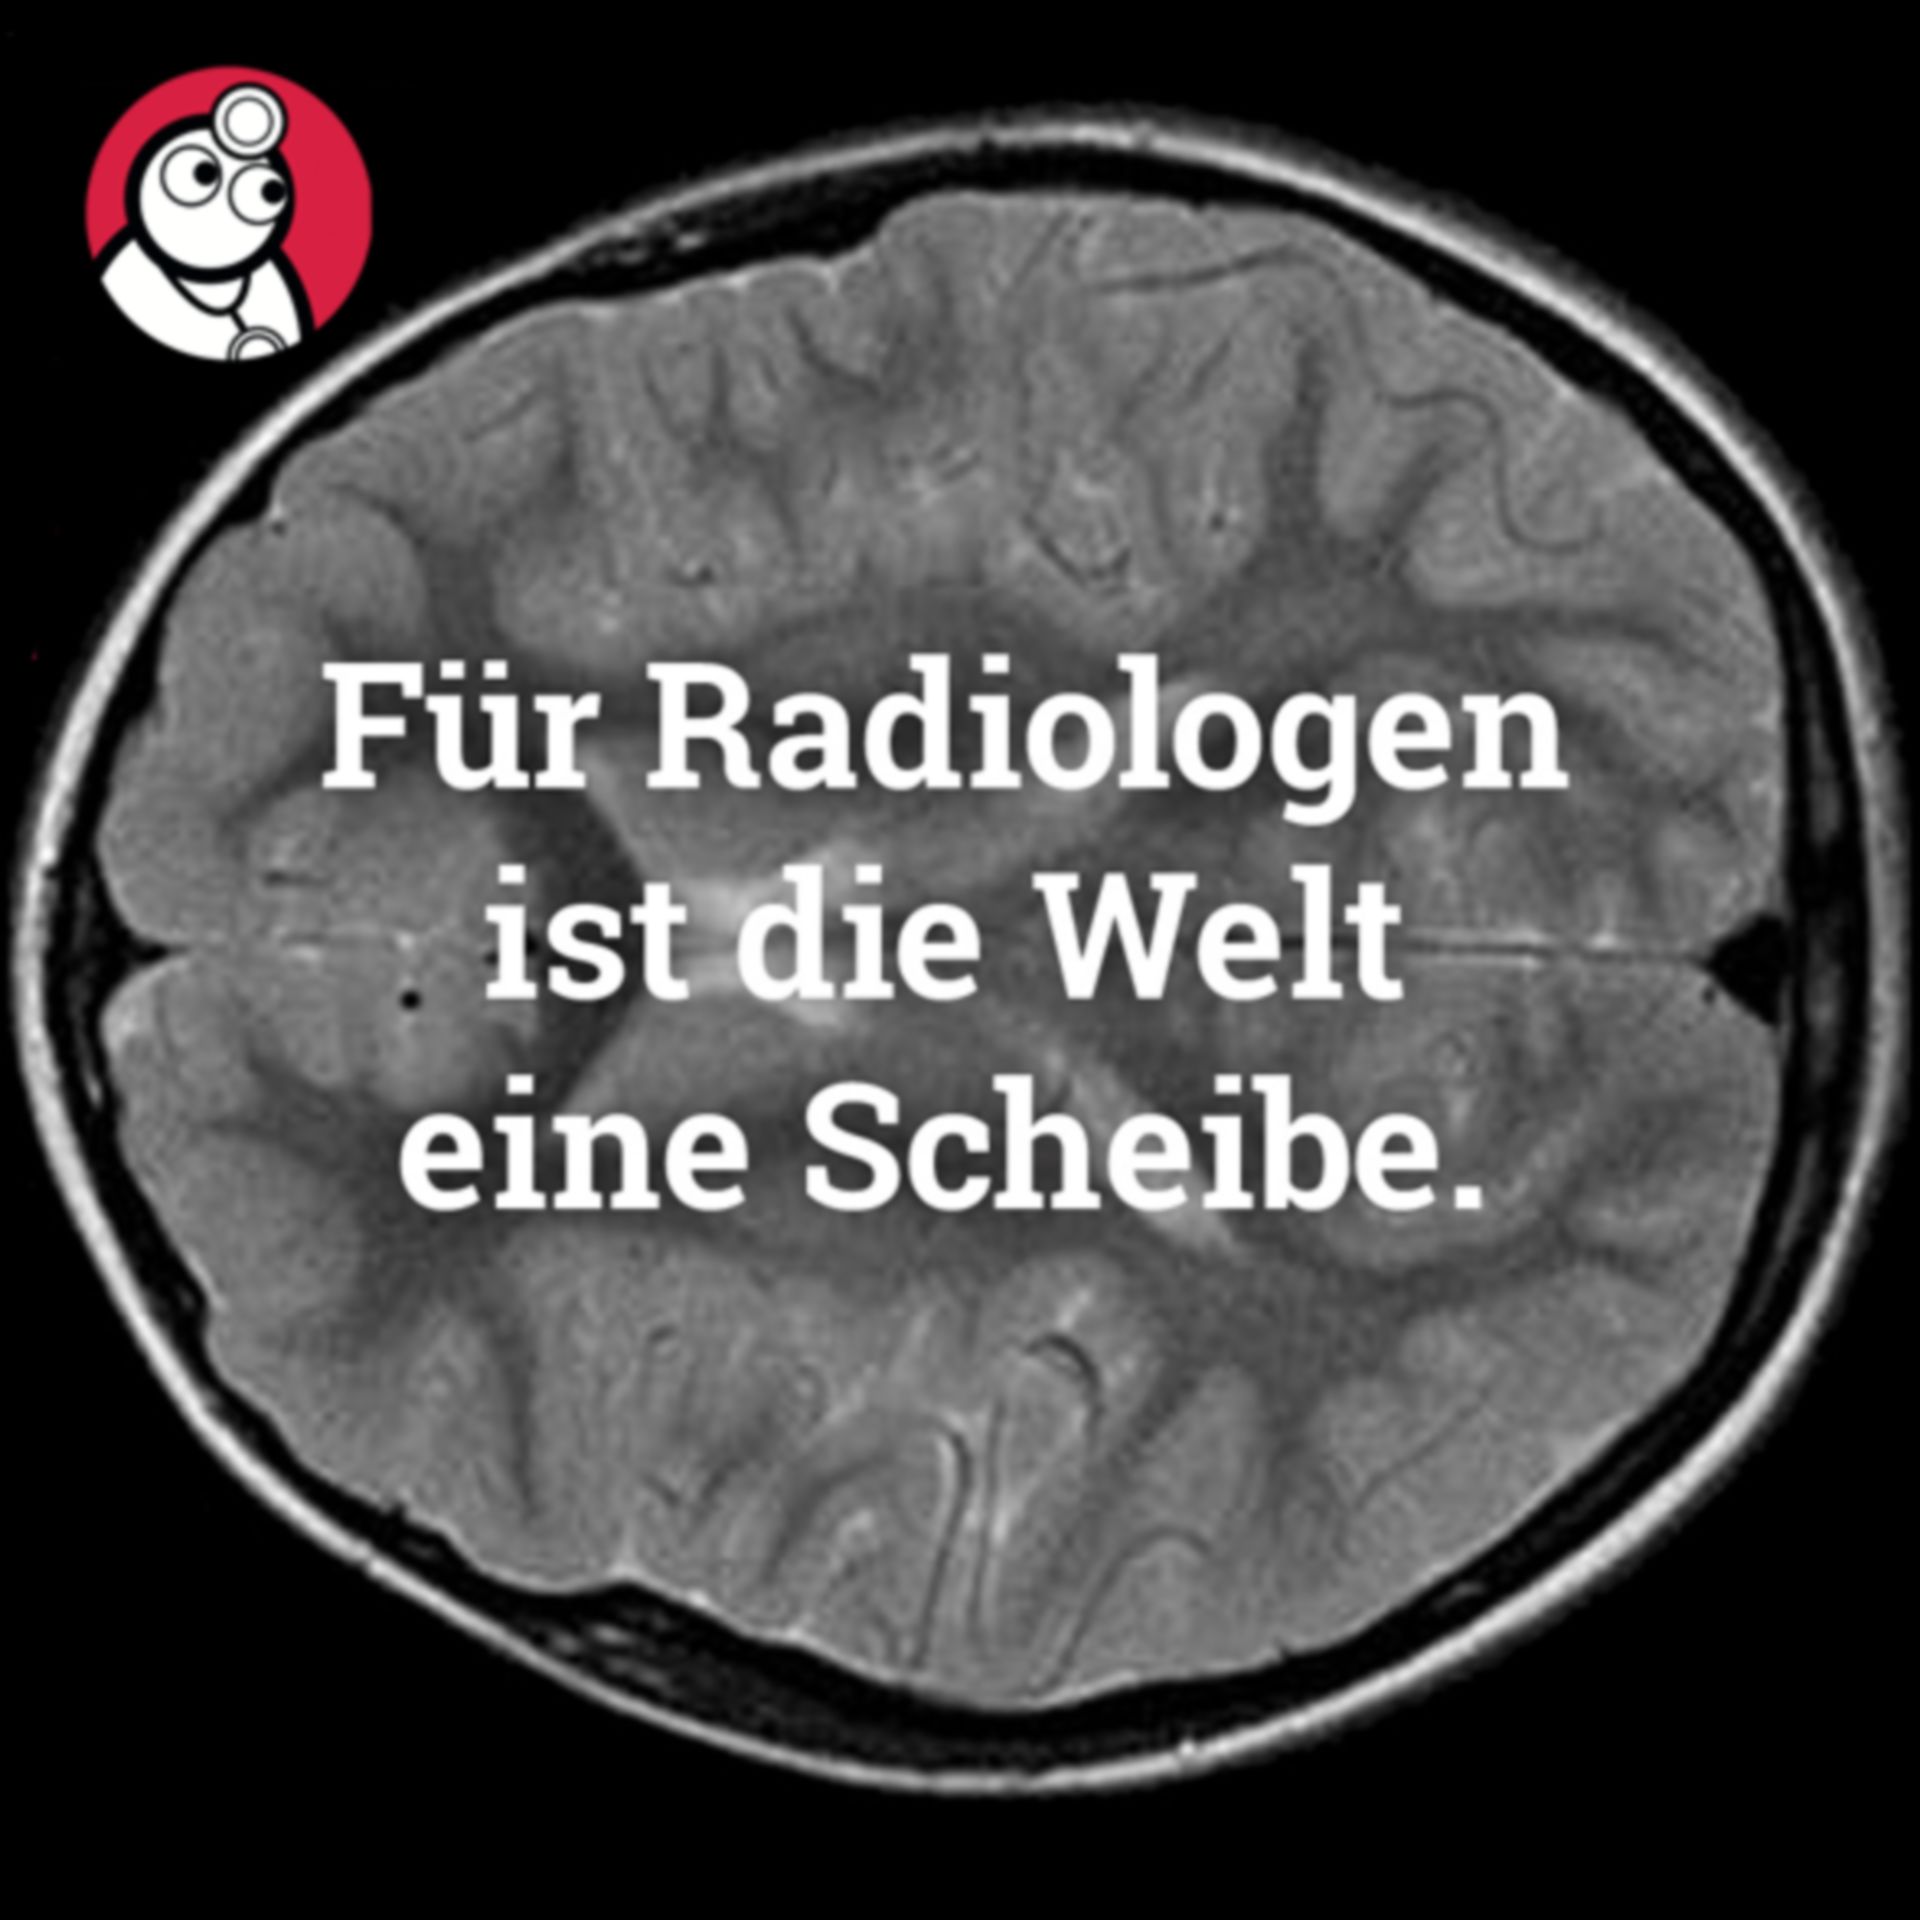 Die Radiologen..